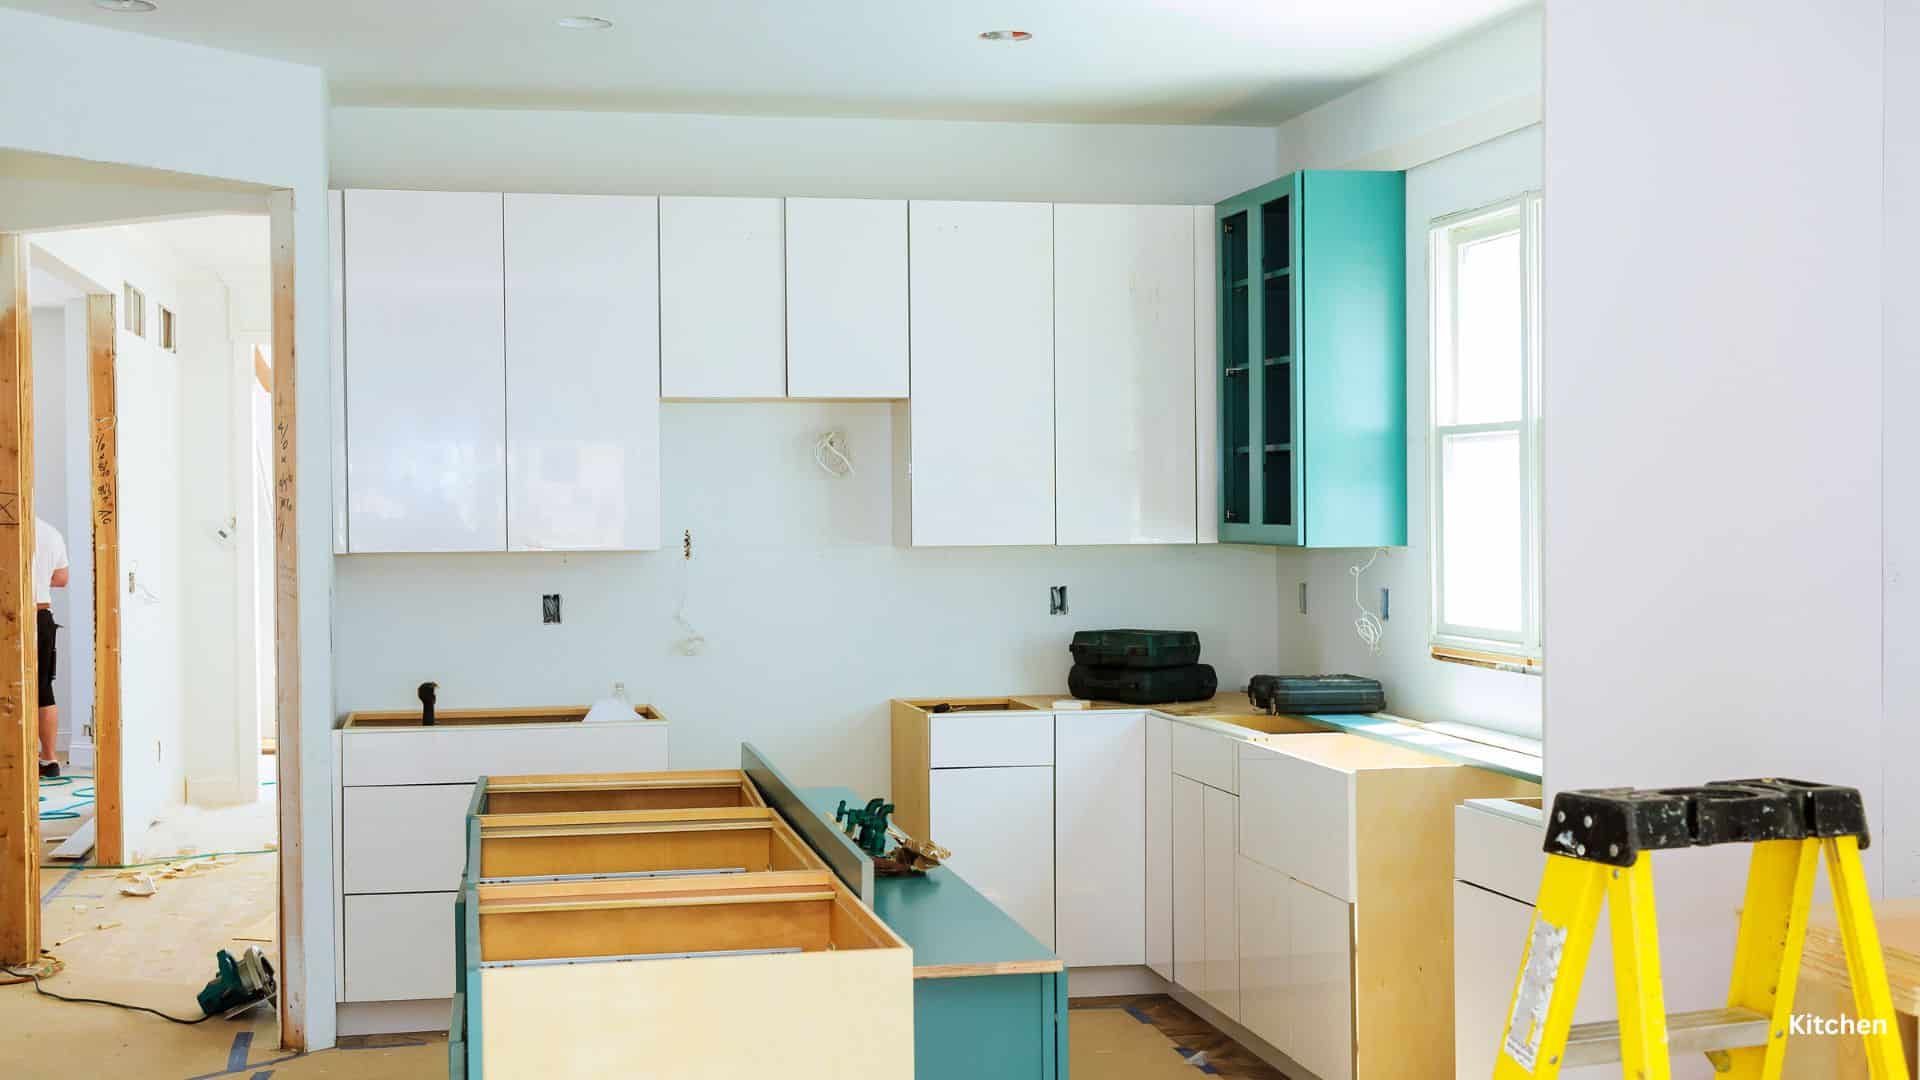 kitchen remodeling checklist